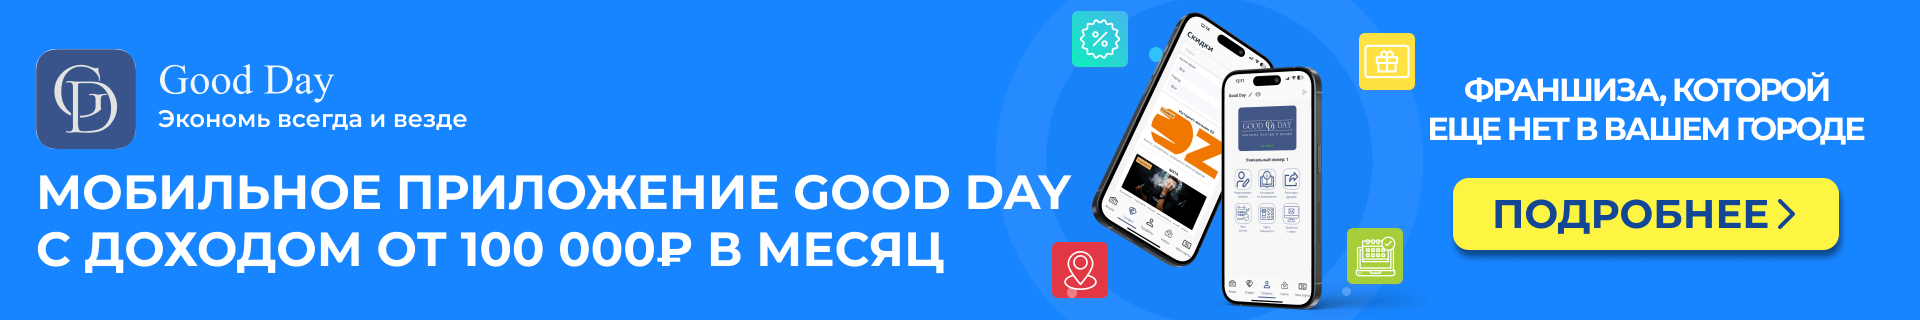 Франшиза мобильного приложения Good Day